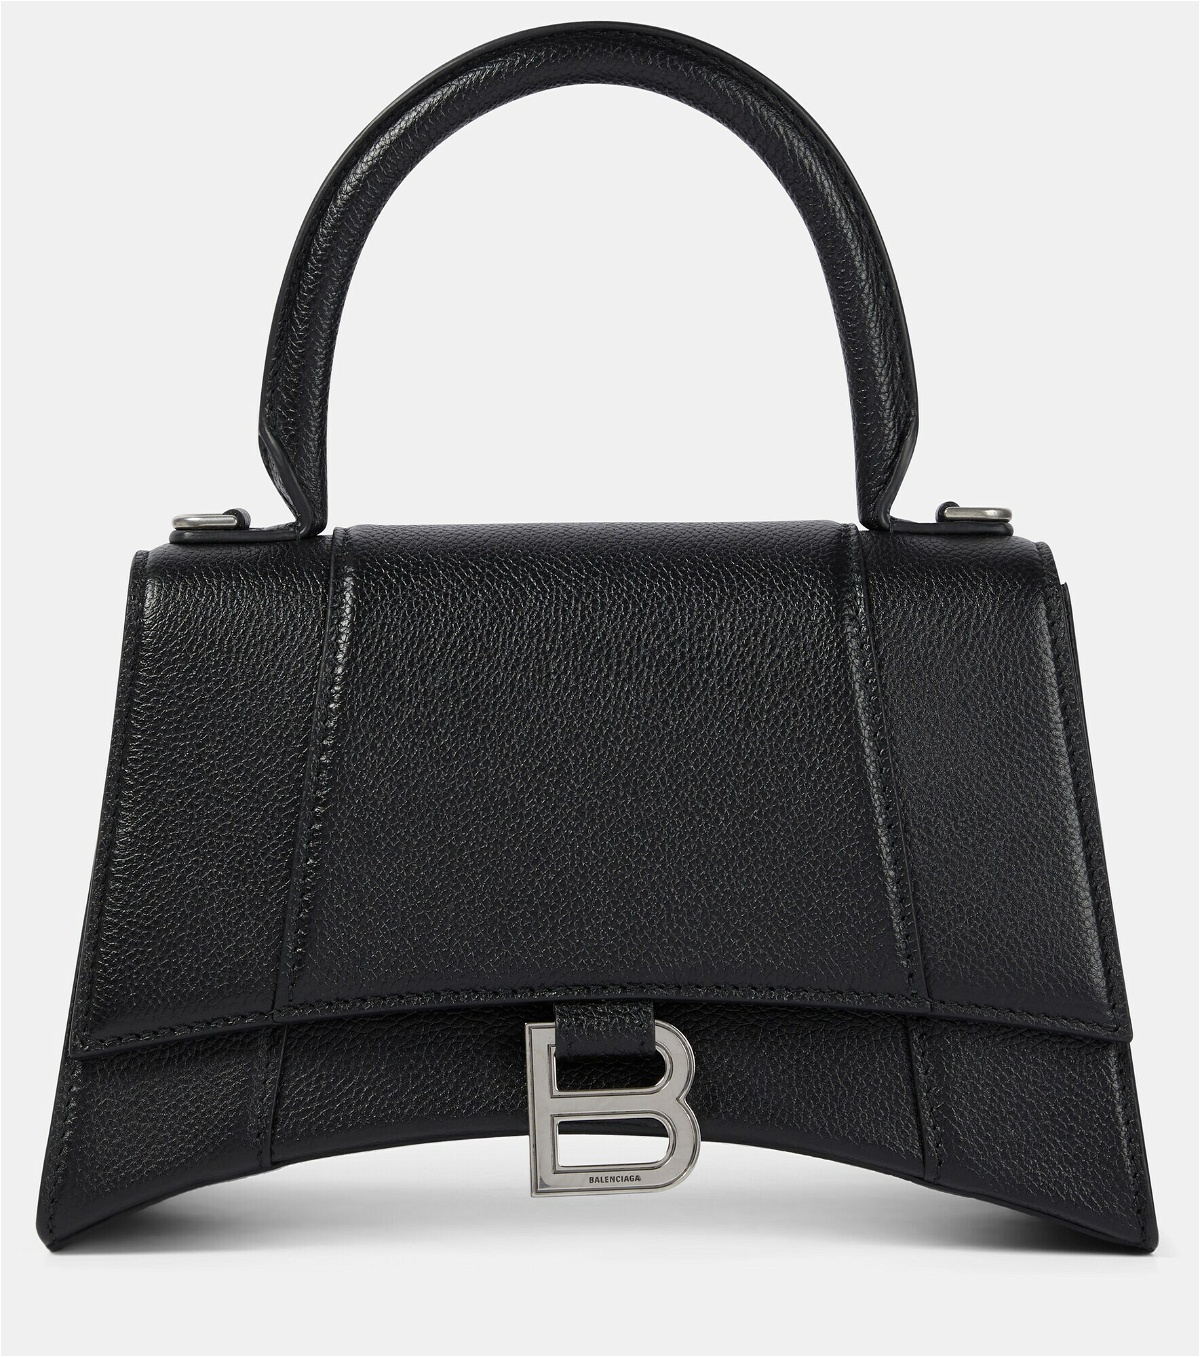 Balenciaga - Hourglass Small leather shoulder bag Balenciaga